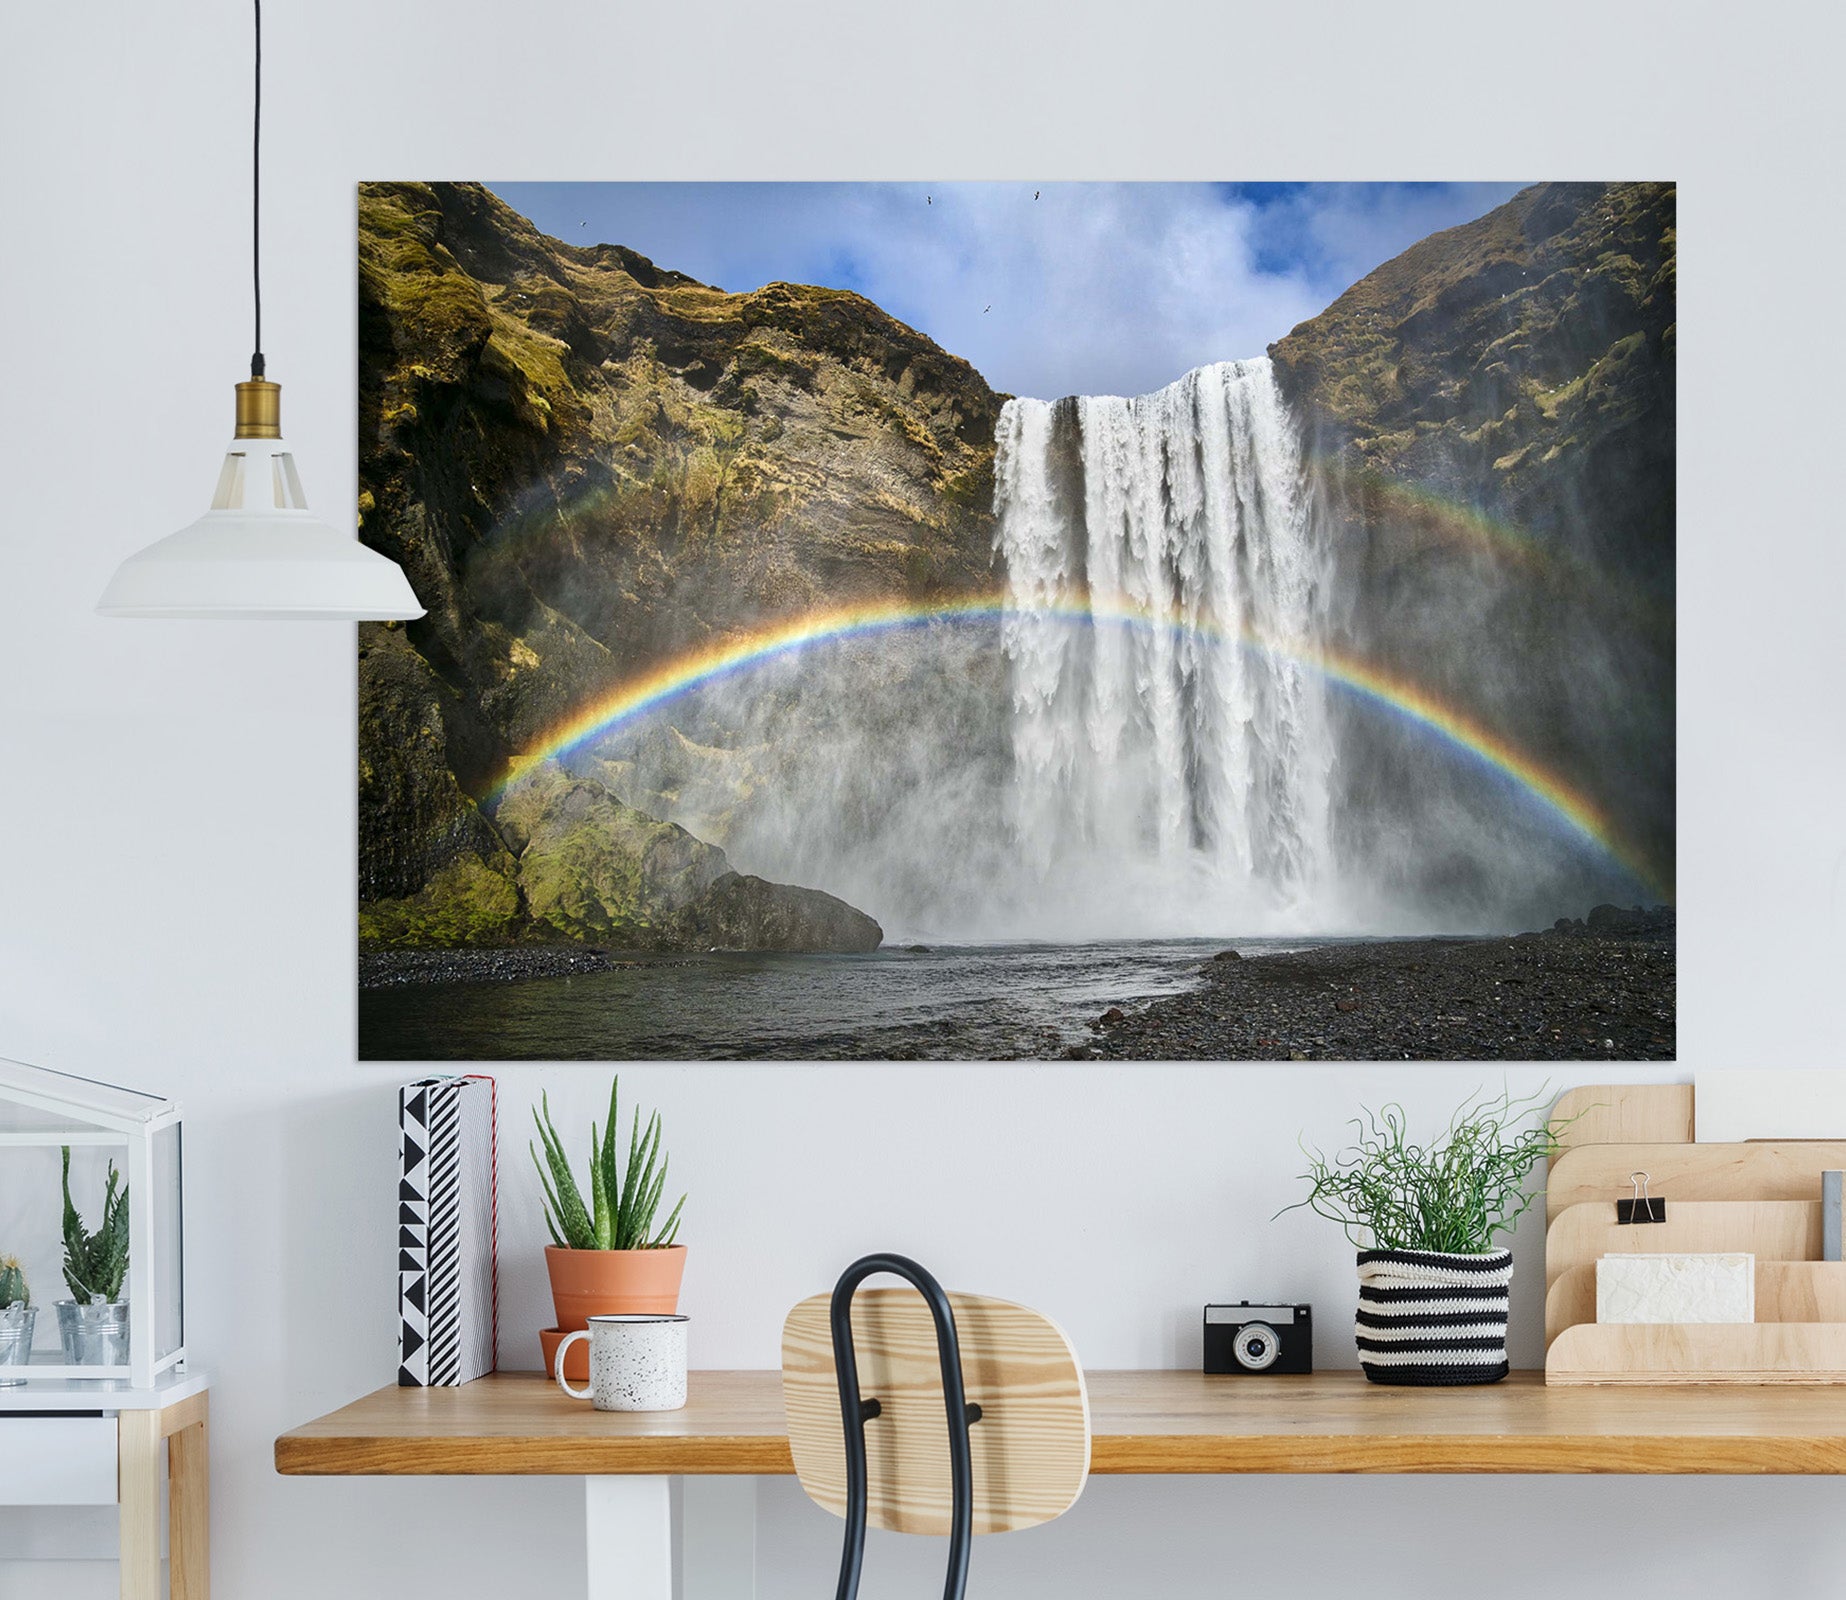 3D Rainbow Falls 201 Marco Carmassi Wall Sticker